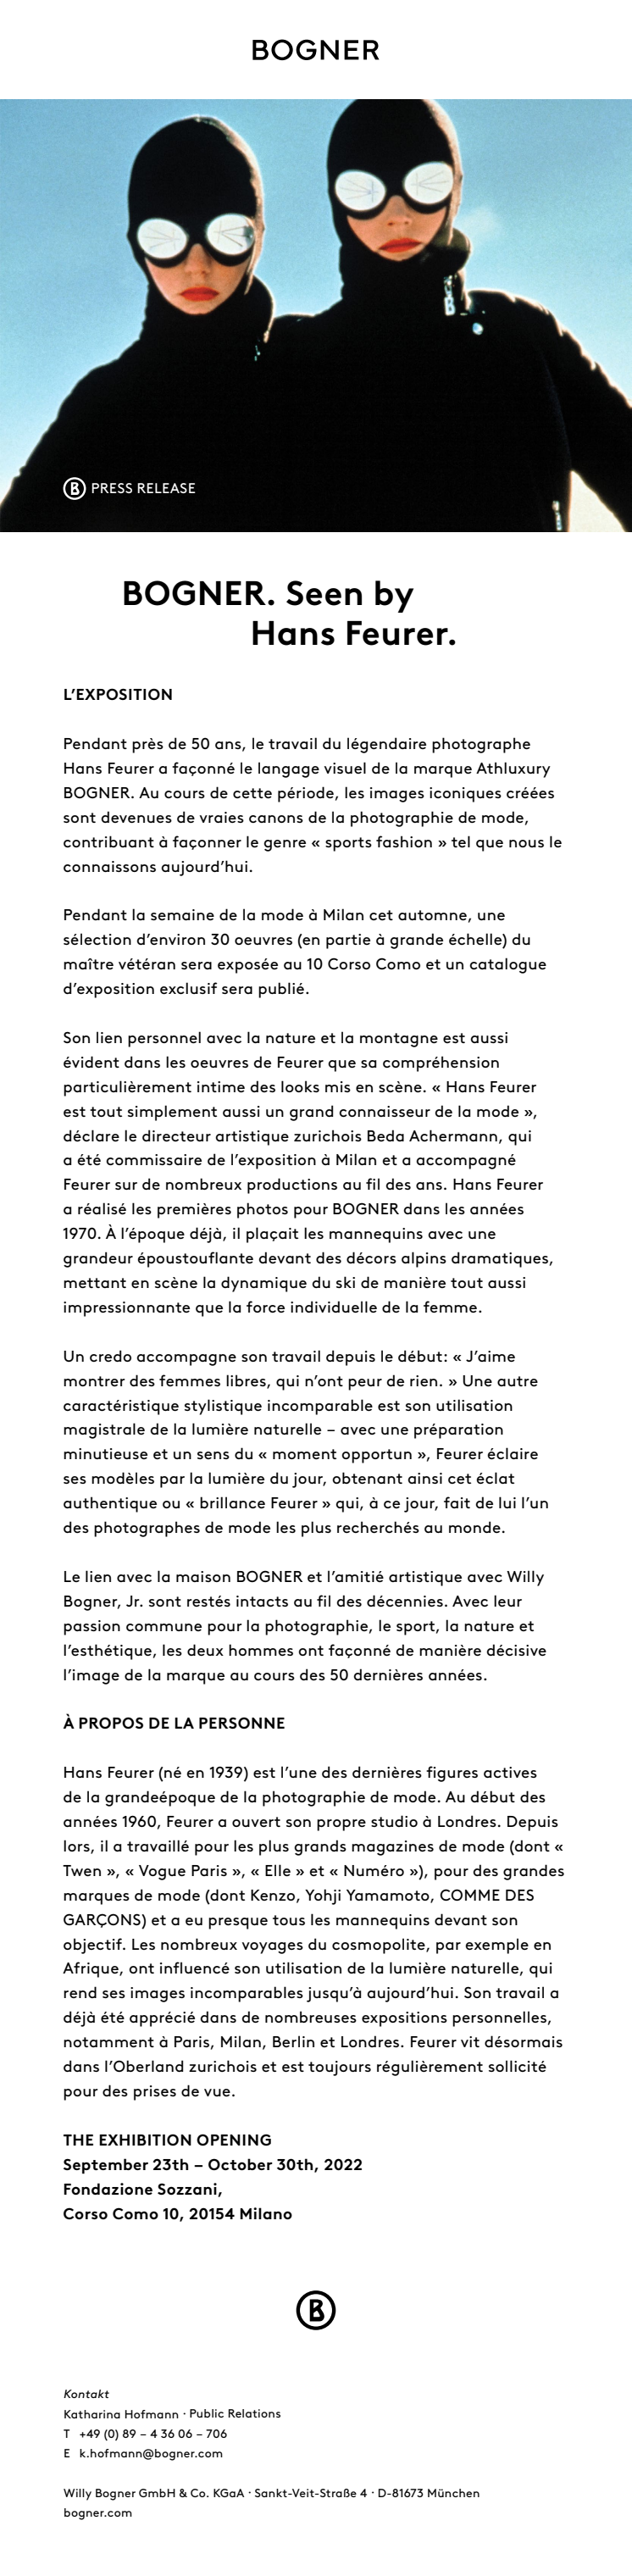 BOGNER_Press Release_Seen by Hans Feurer_FR.pdf